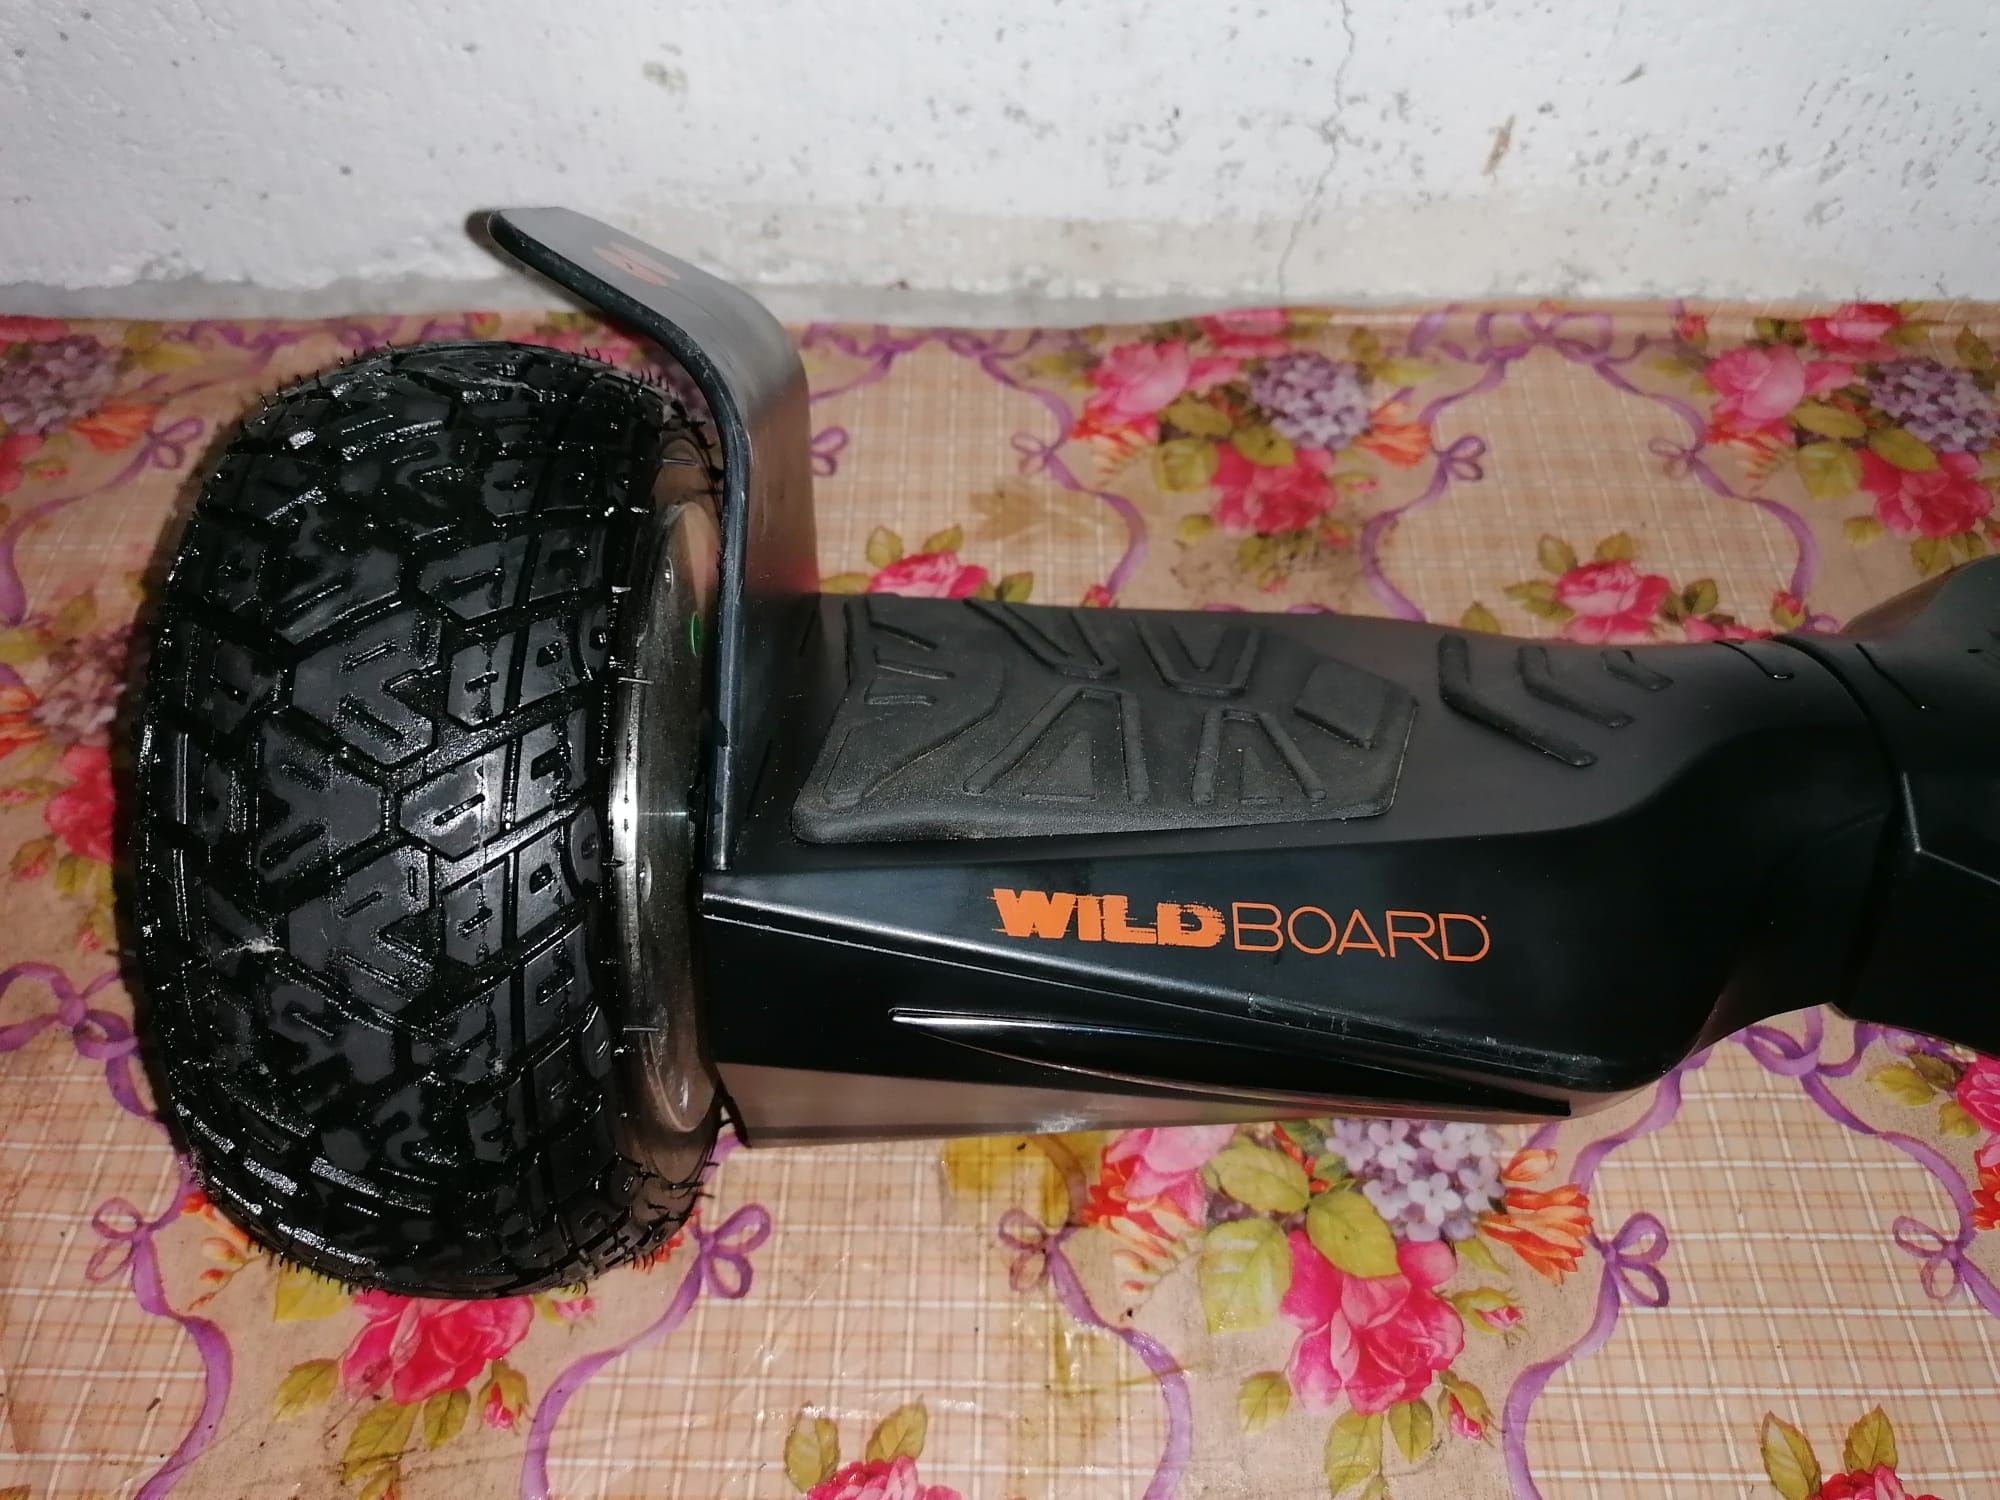 Wilbdoard XL 8, 5"